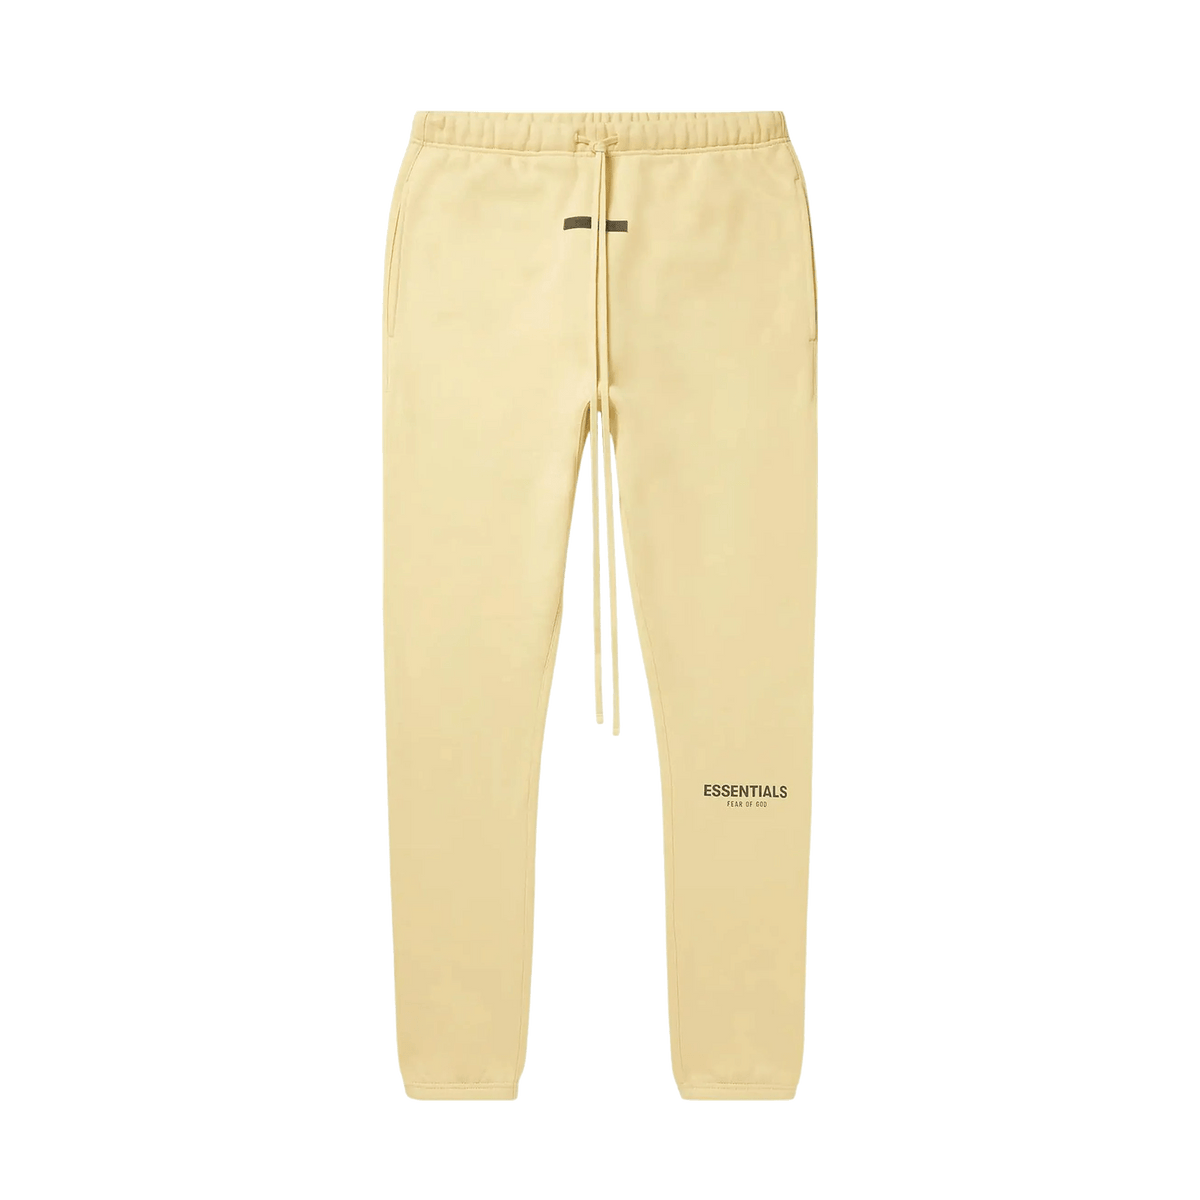 Contrast High Waist Cotton Denim Shorts Essentials x Mr. Porter Exclusive Sweatpants 'Garden Glove' - UrlfreezeShops